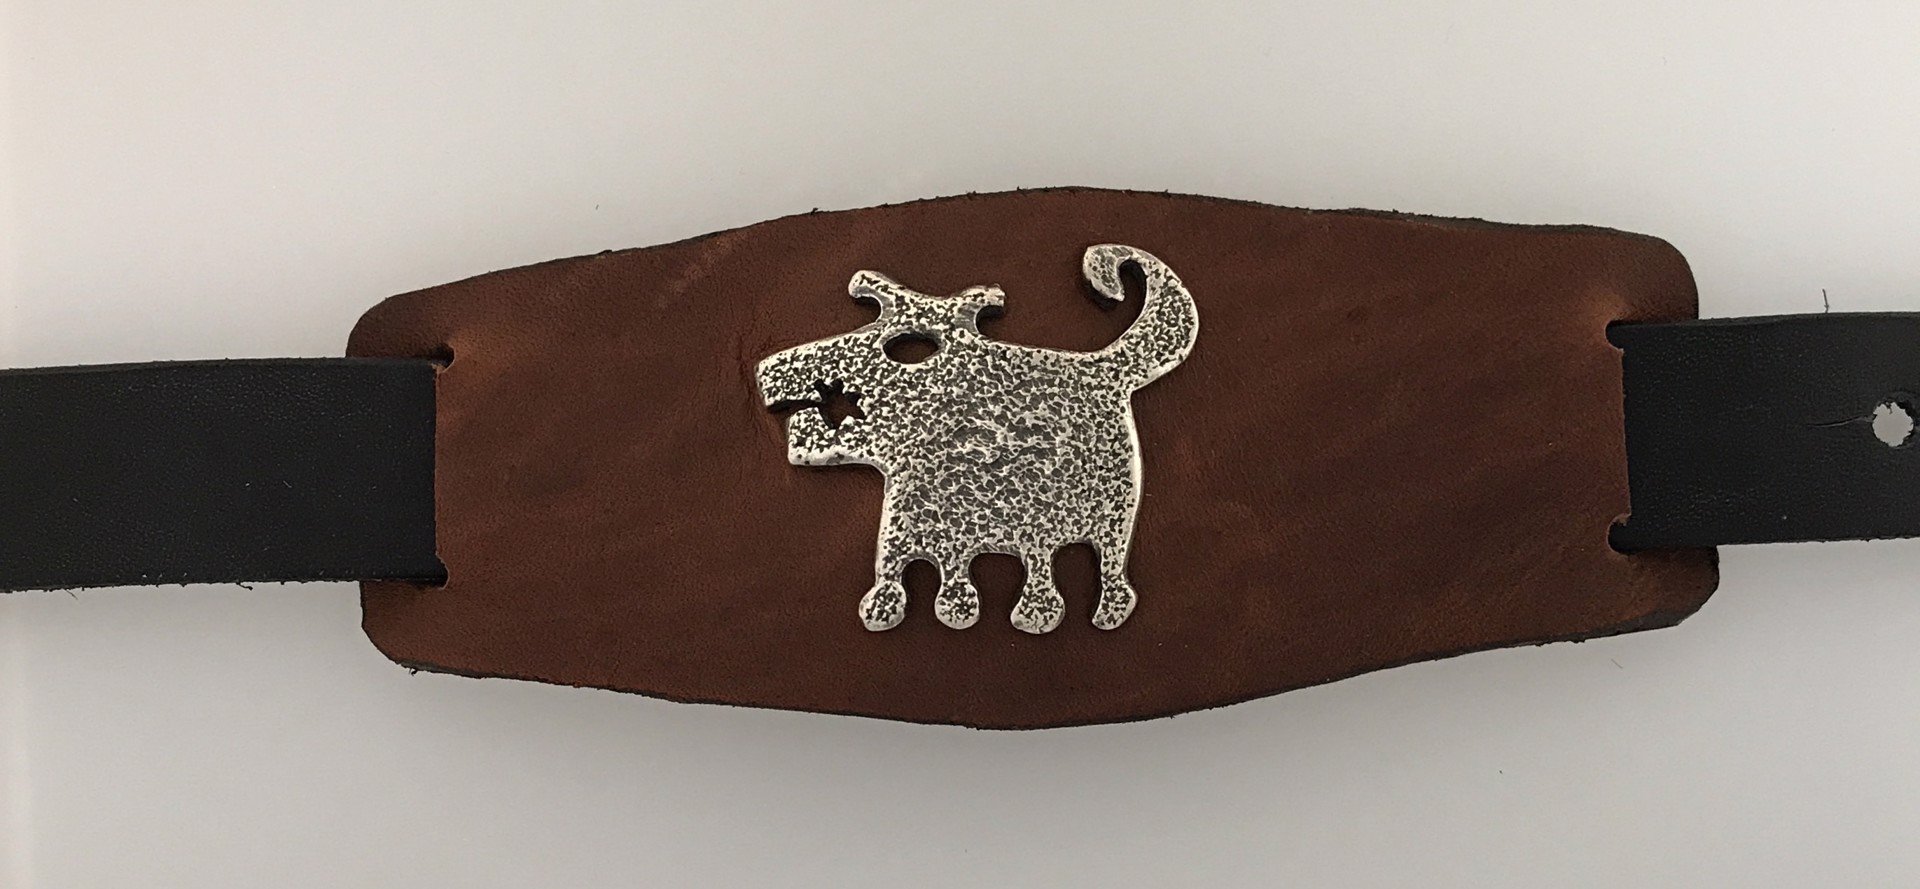 Leather cuff with Silver rez dog by Melanie Yazzie